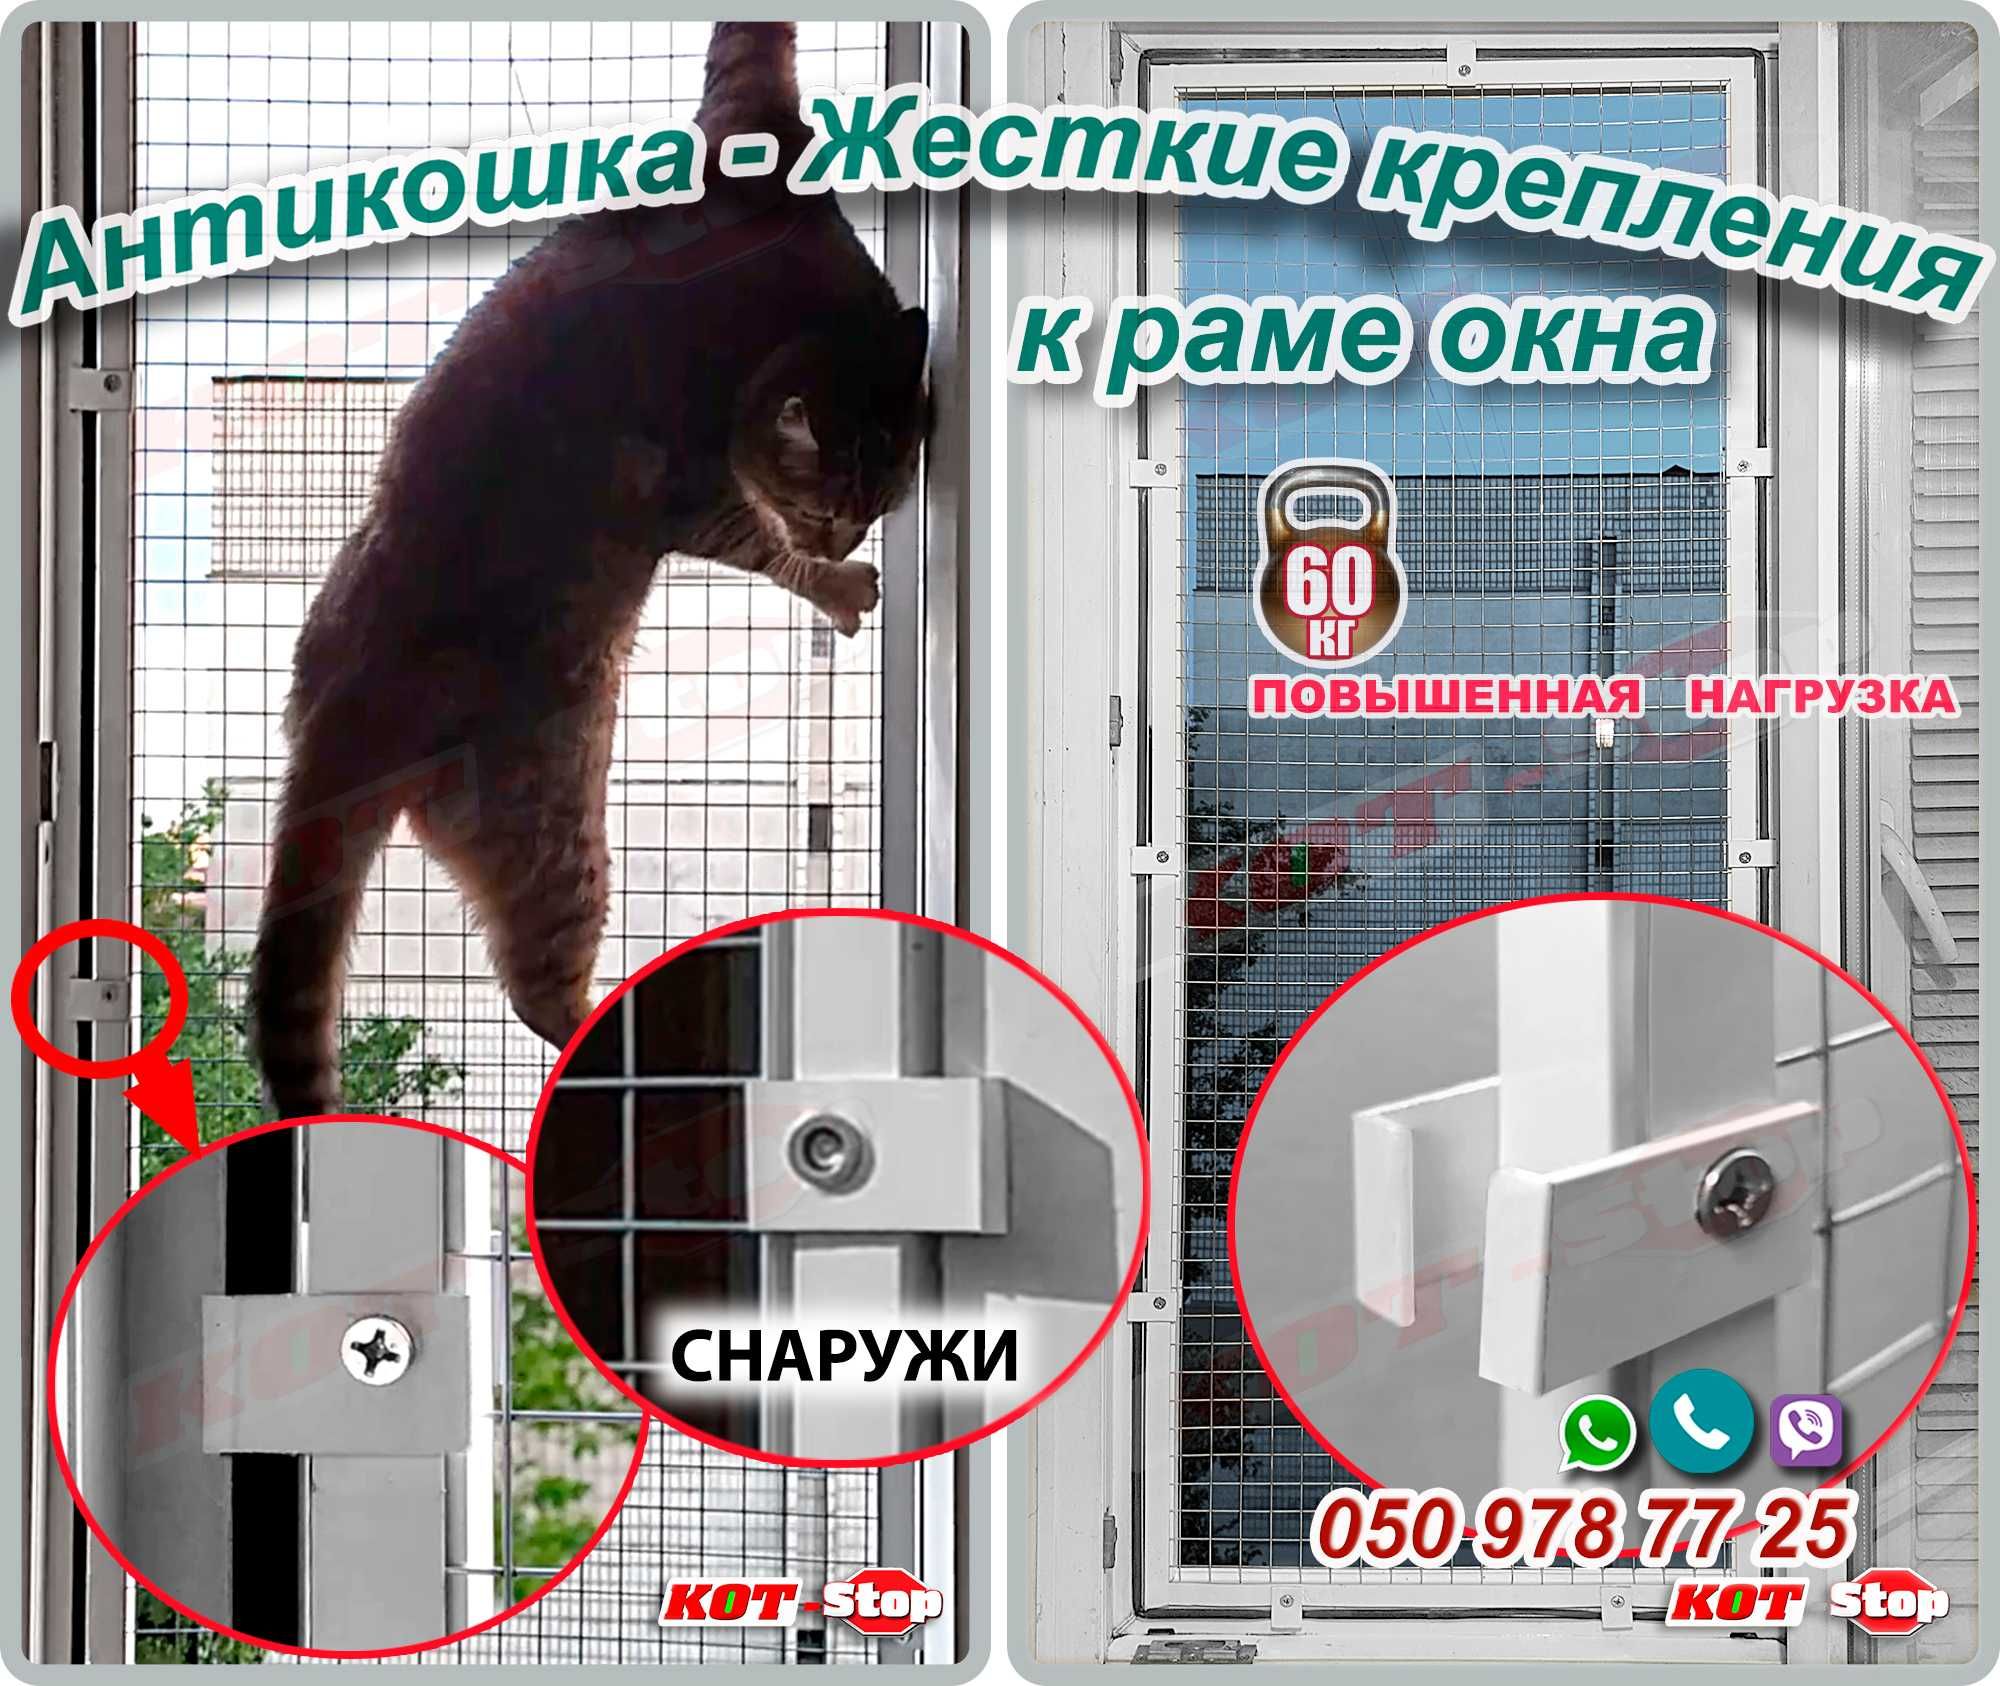 АНТИКОШКА защитная решетка для кошек на окно ЖЕСТКИЕ КРЕПЛЕНИЯ